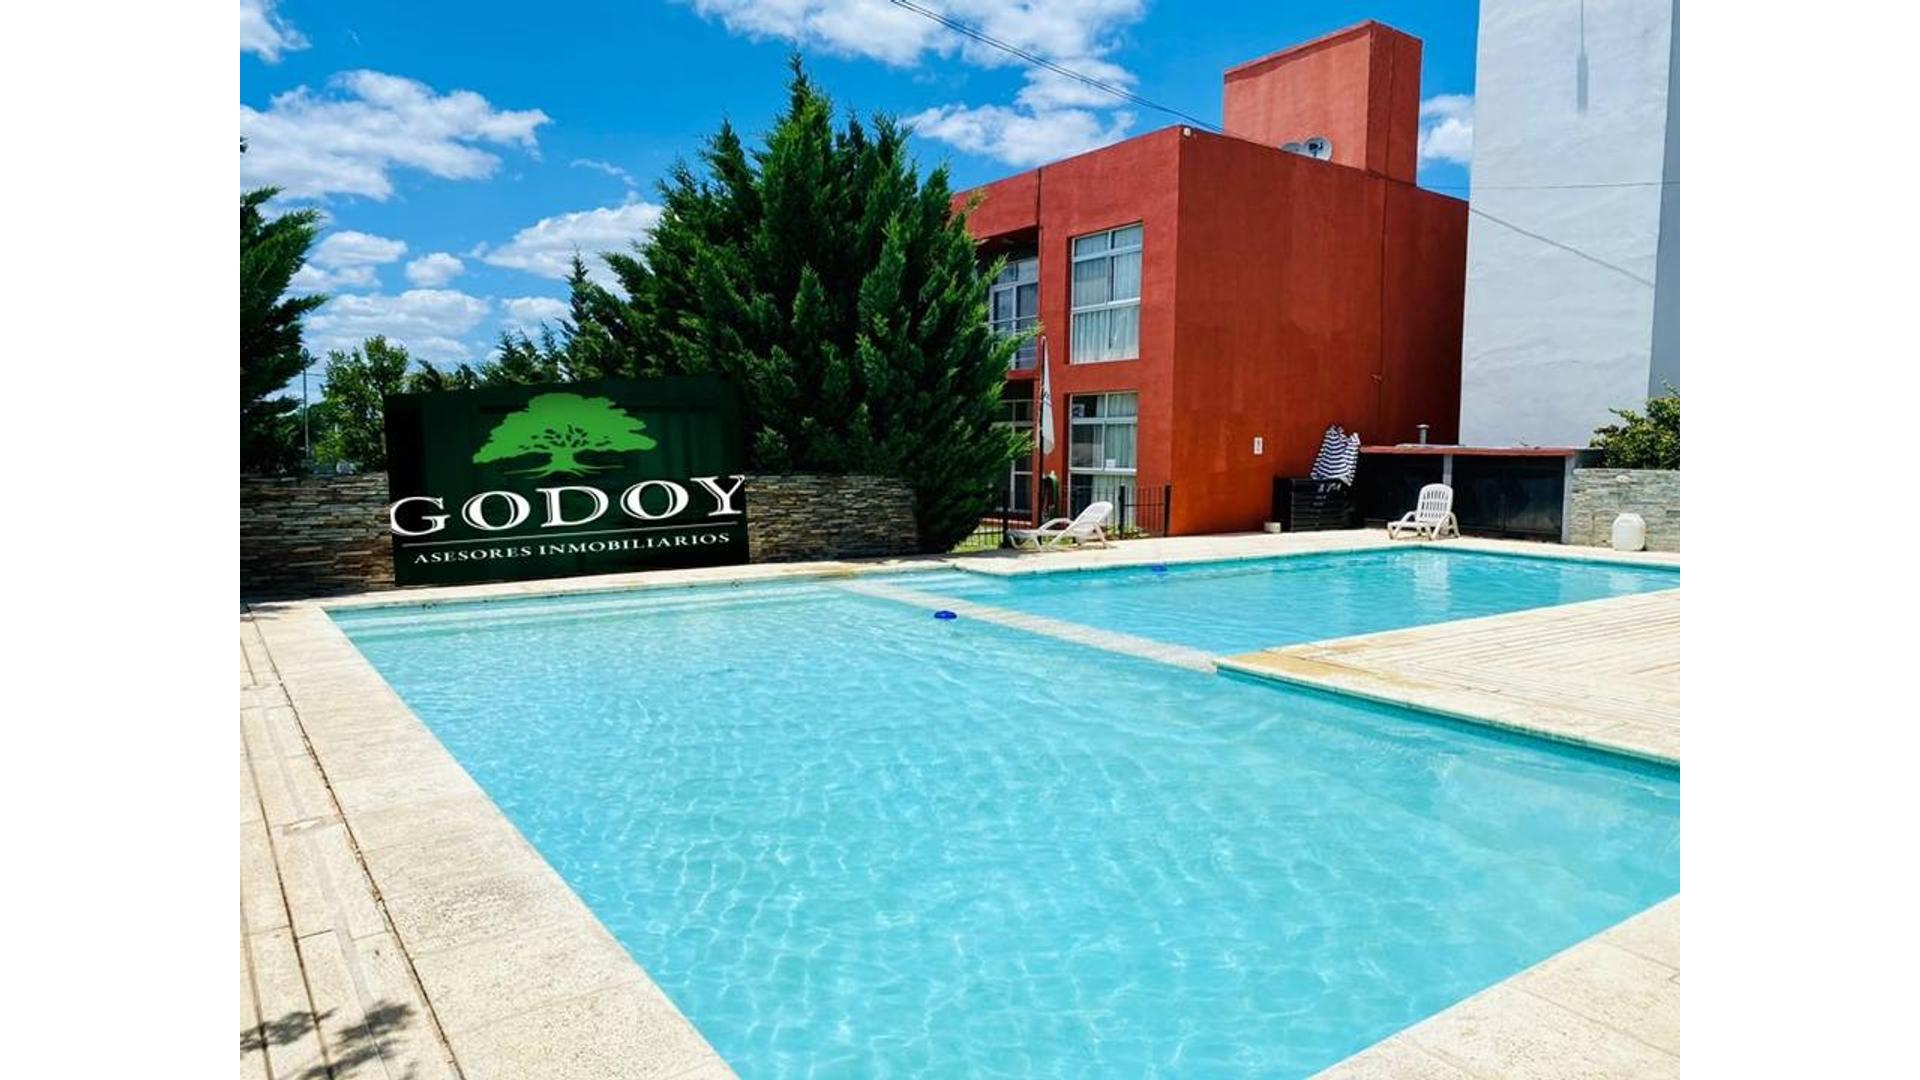 #2356312 | Venta | Hotel | Colon (Godoy Asesores Inmobiliarios)